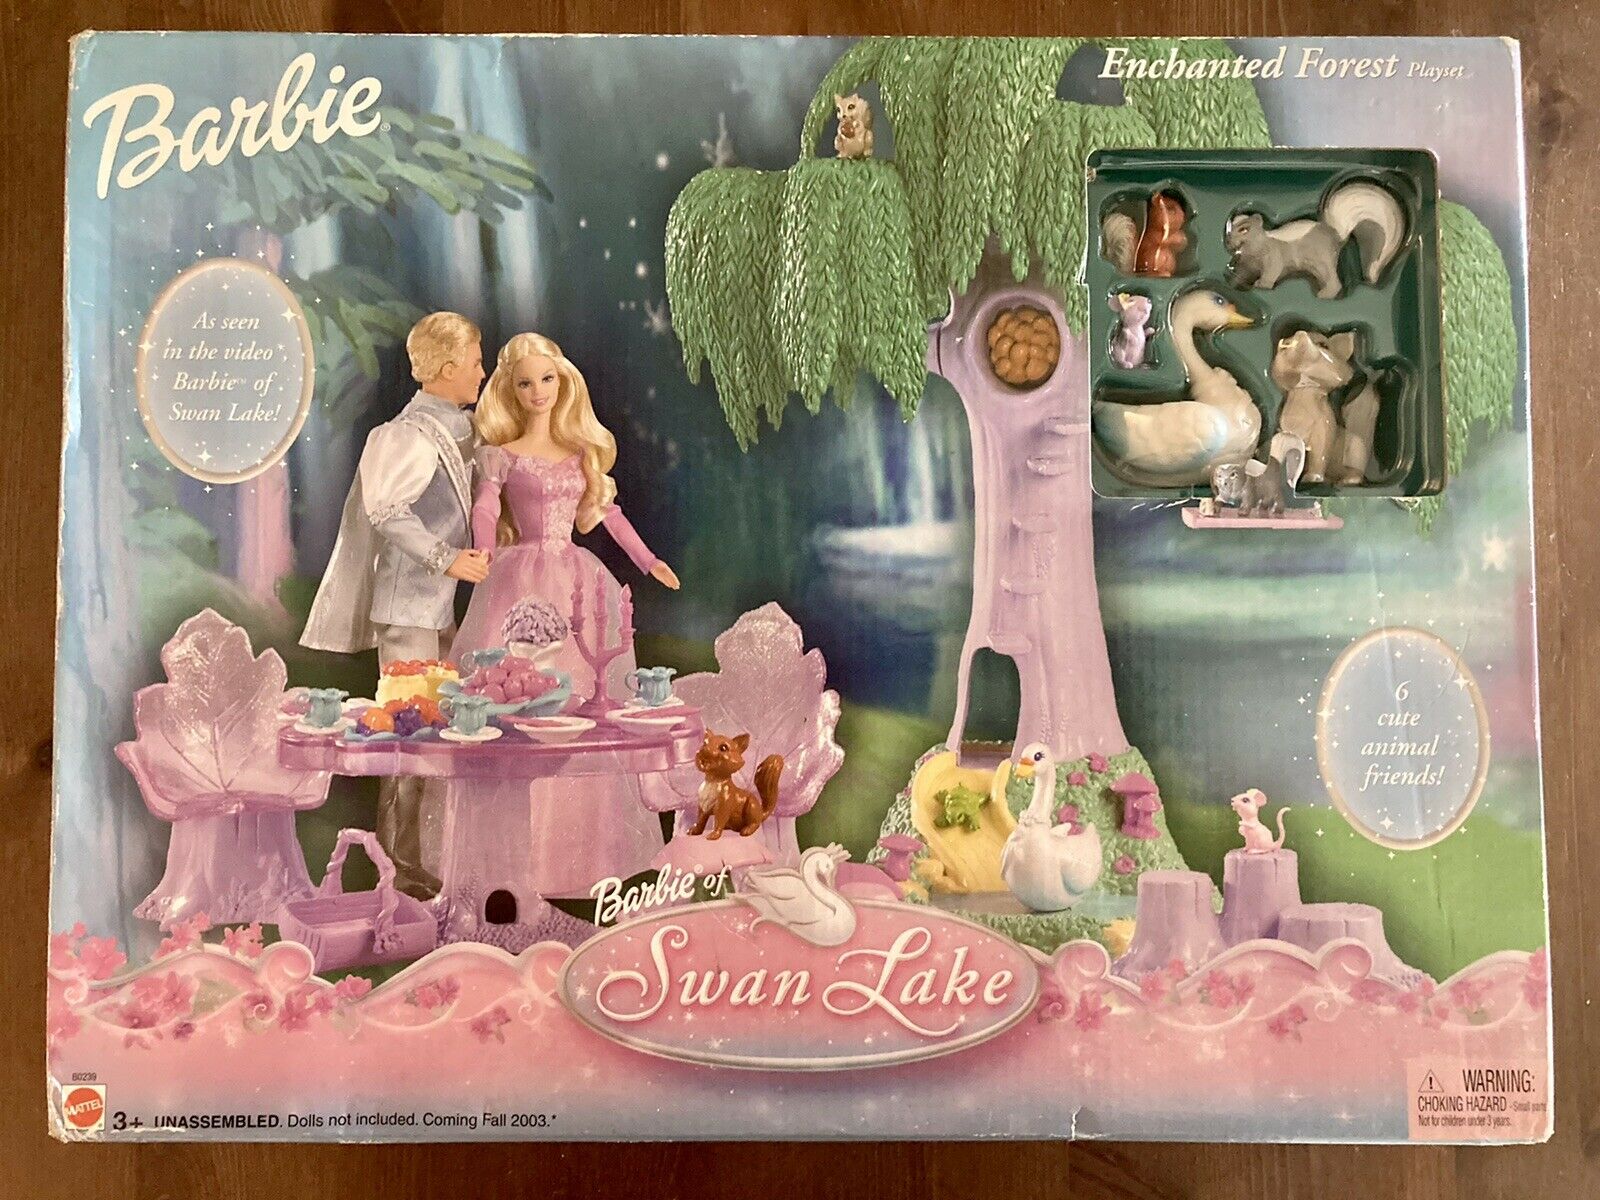 Barbie Of Swan Lake Enchanted Forest Playset Nrfp Mattel B0239 2003 Sealed Rare